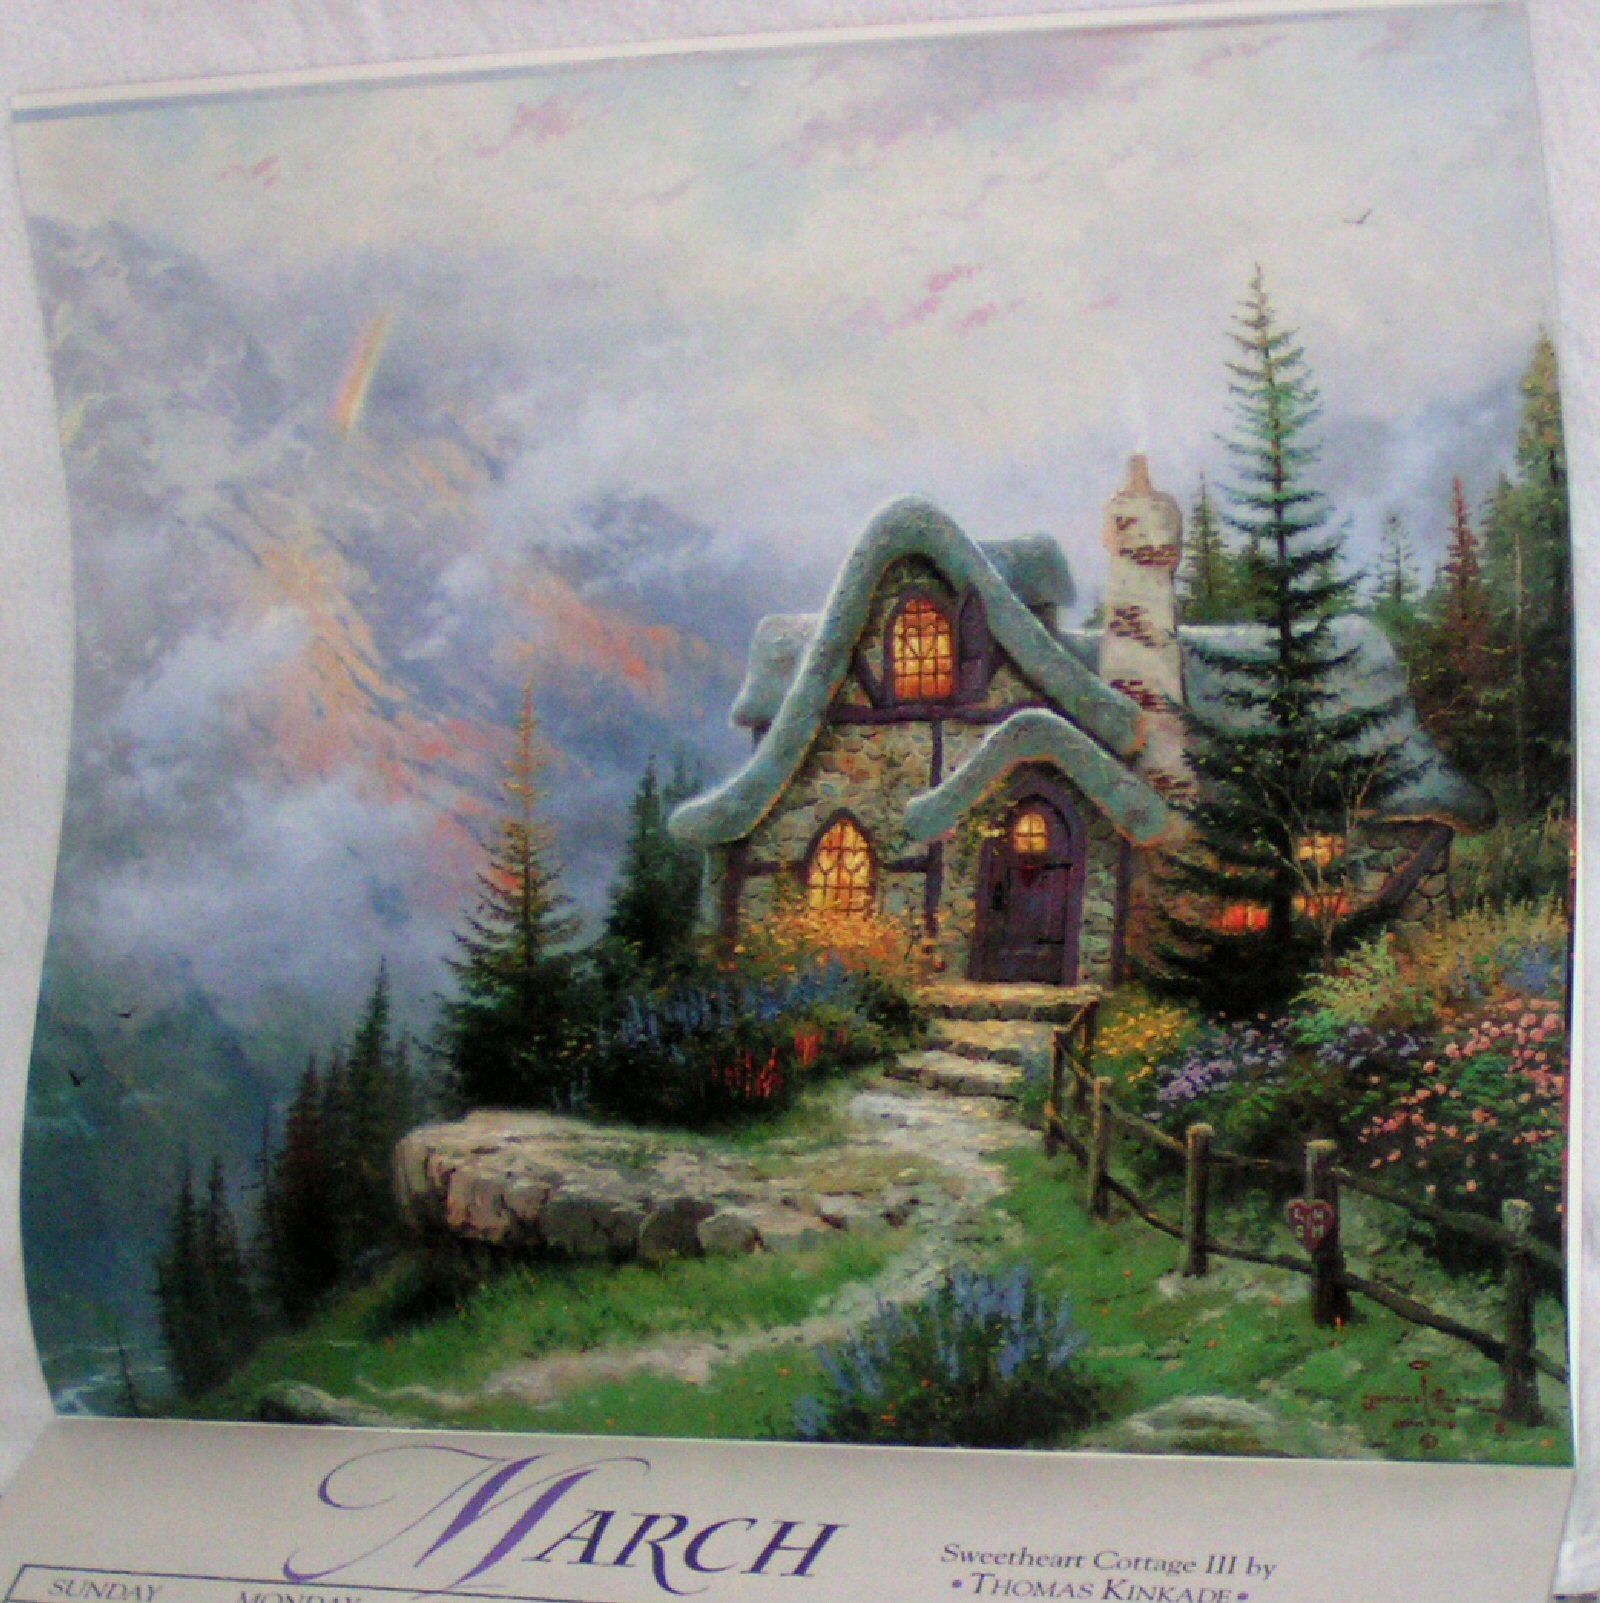 Thomas Kinkade BRAND NEW 1996 Calendar Prints for Framing - Click Image to Close